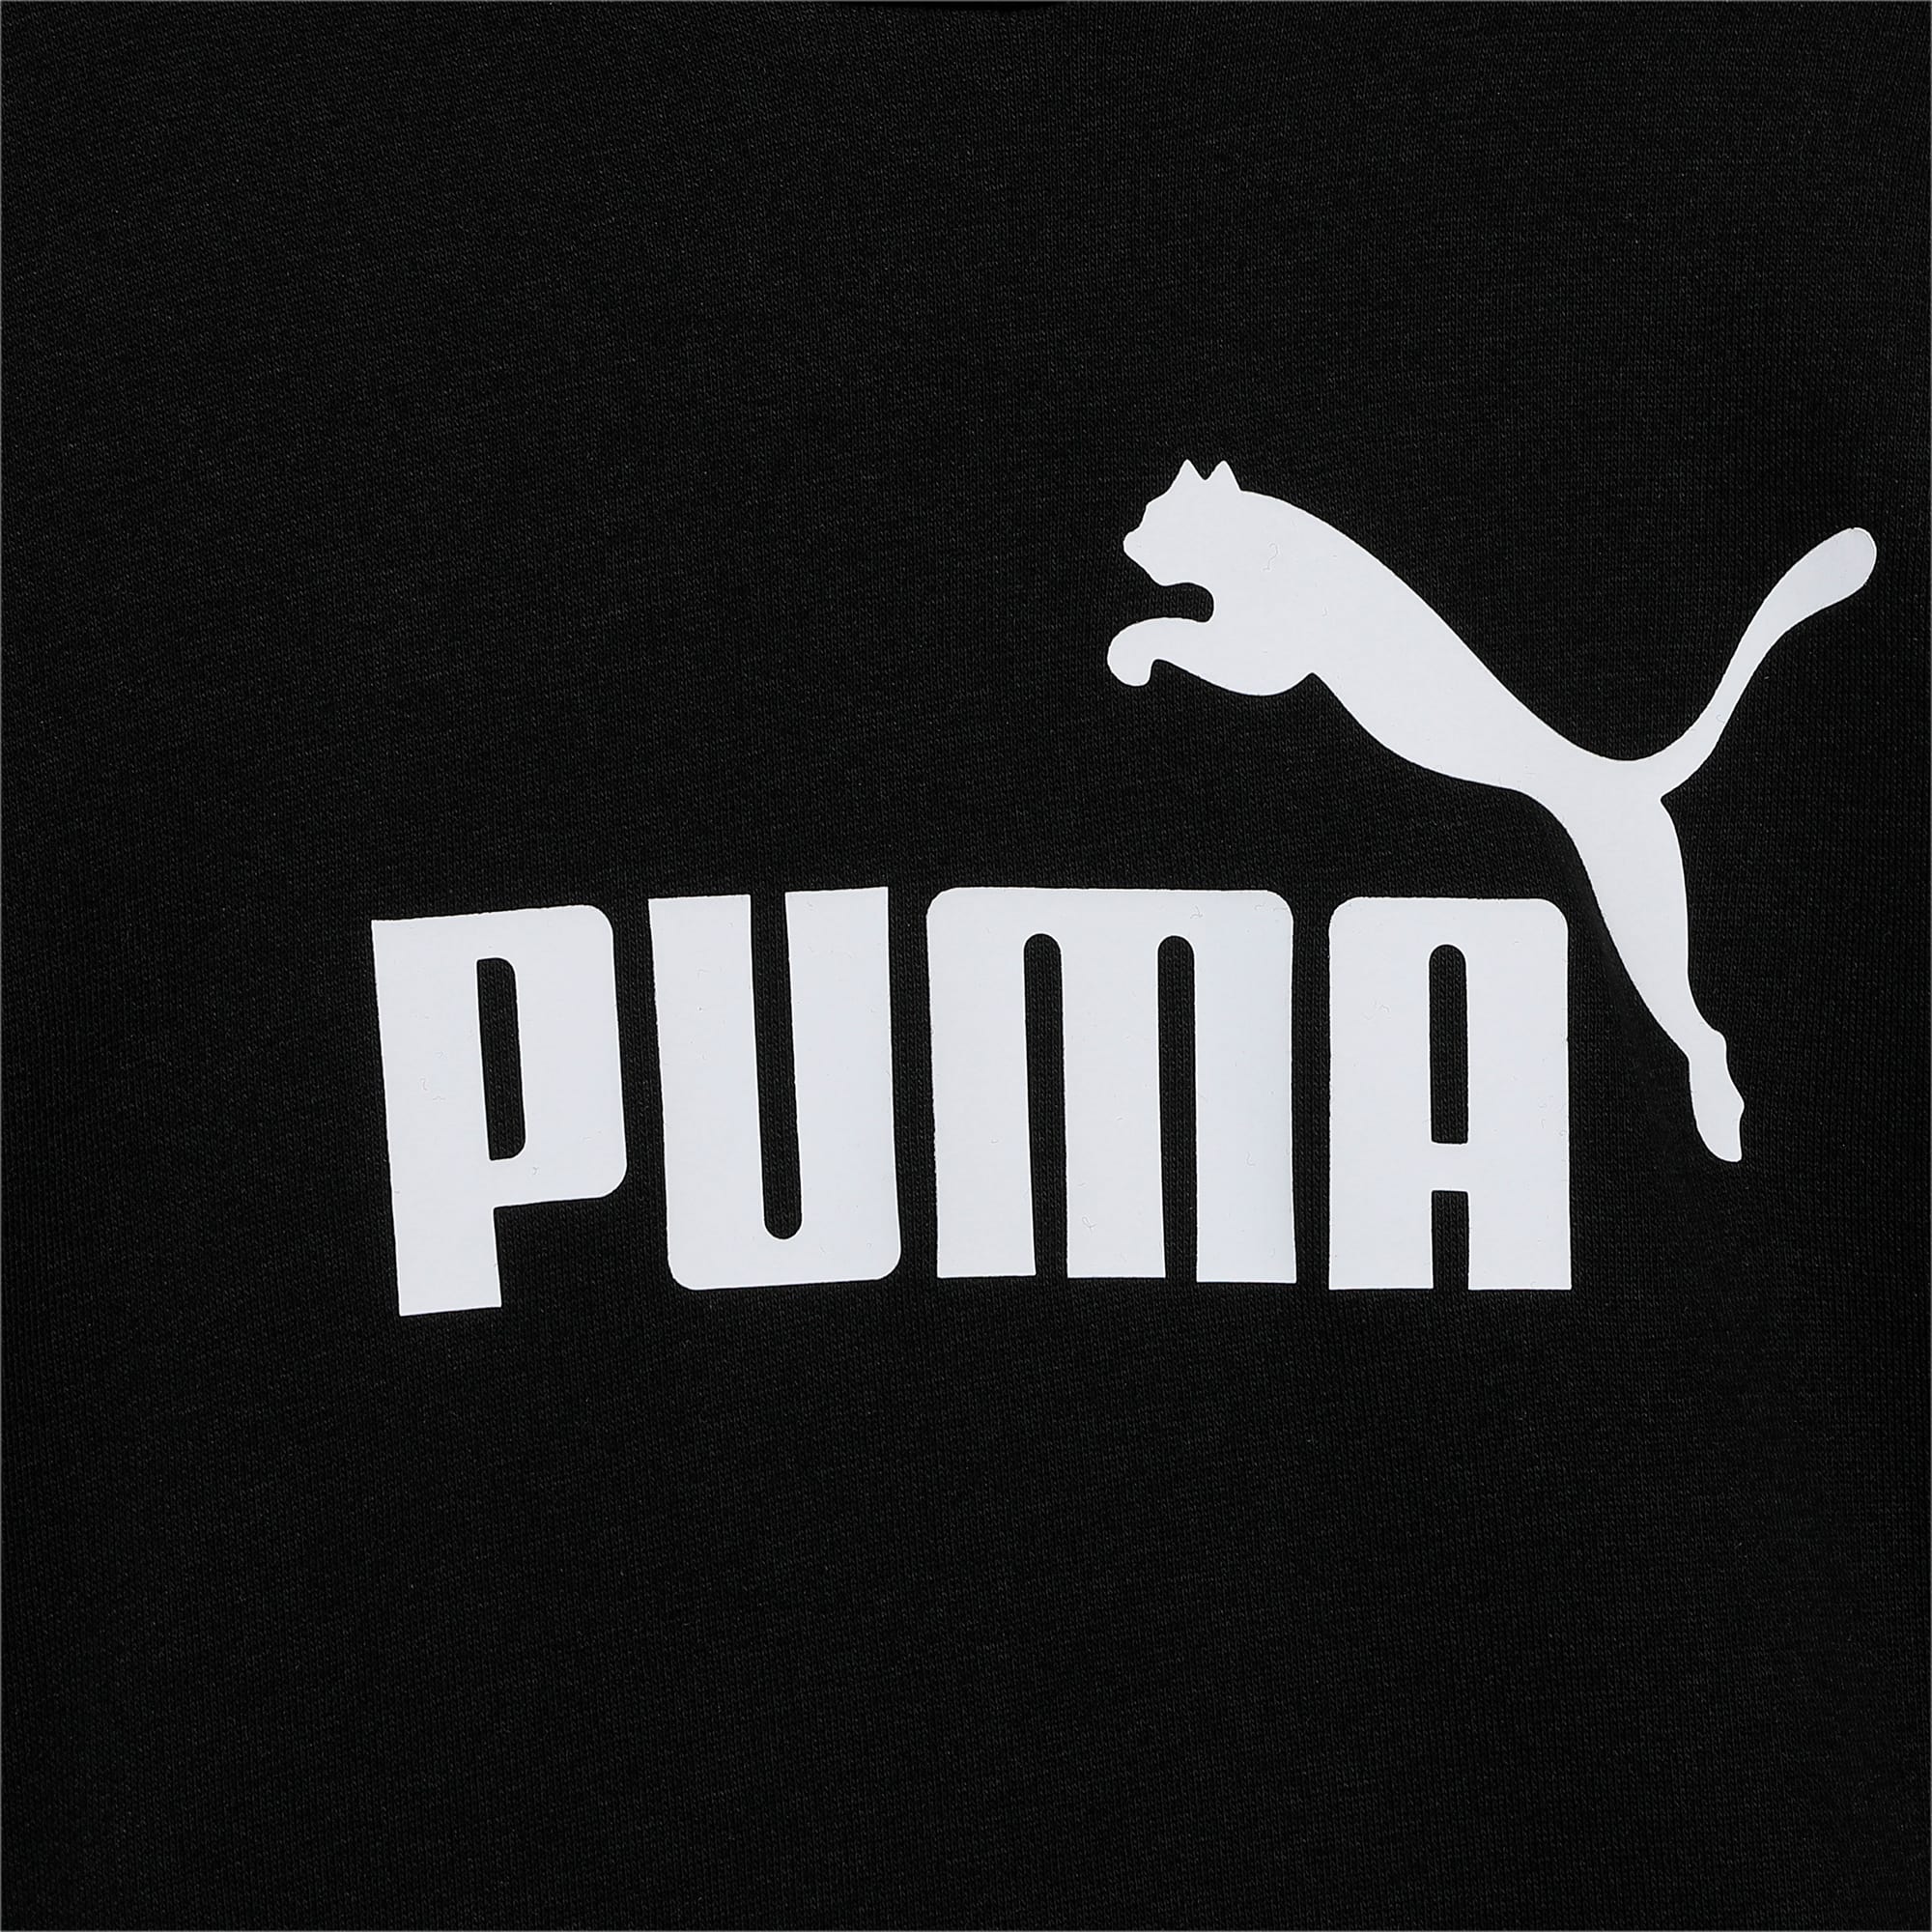 PUMA Essentials Logo Youth Hoodie, Black, Size 15-16Y, Clothing